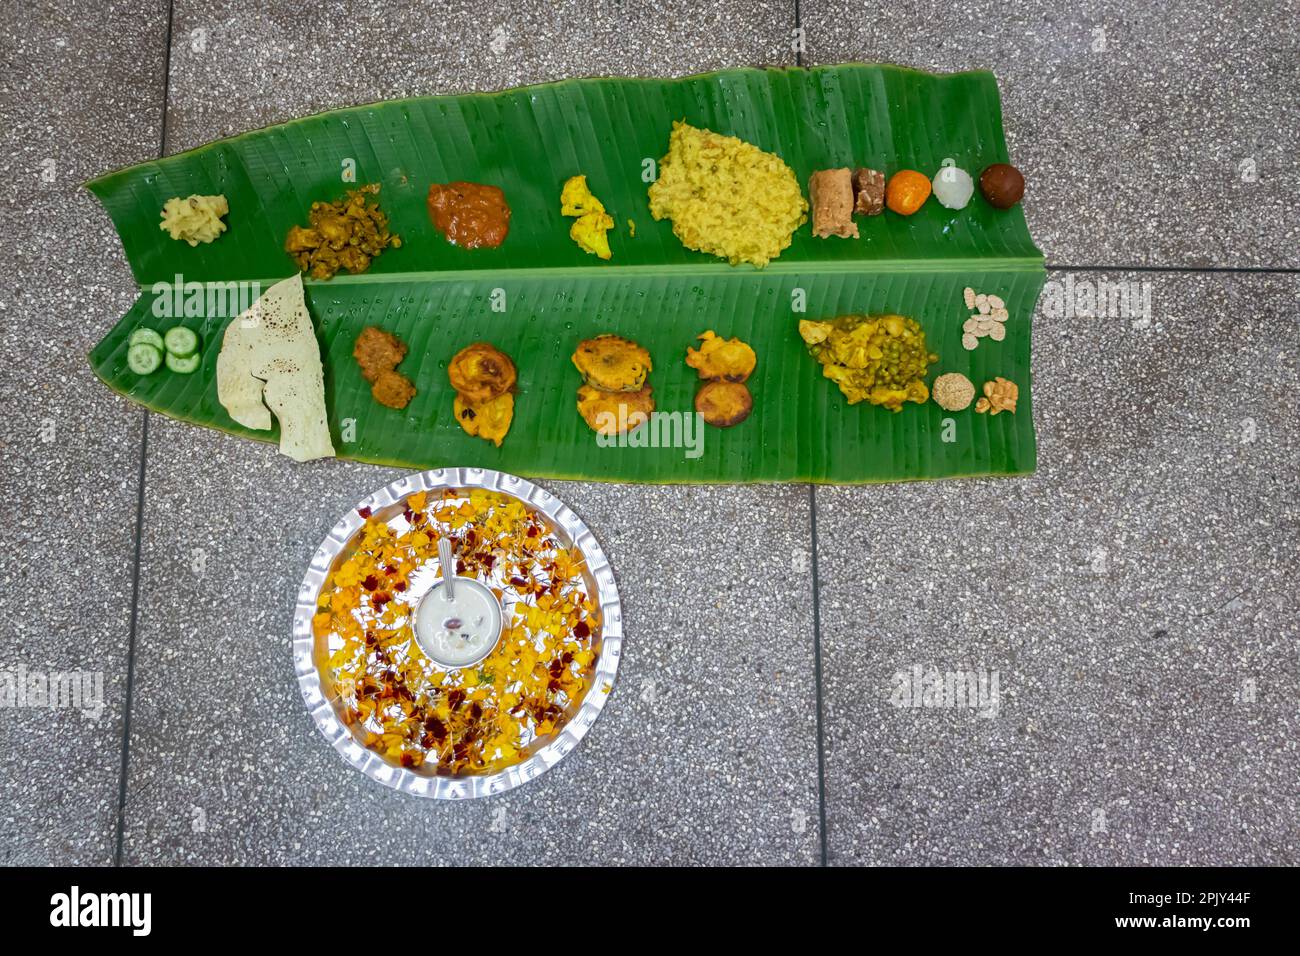 traditionelle indische Gerichte aus der Region mithila werden auf dem Festival auf Bananenblatt aus verschiedenen Blickwinkeln serviert Stockfoto